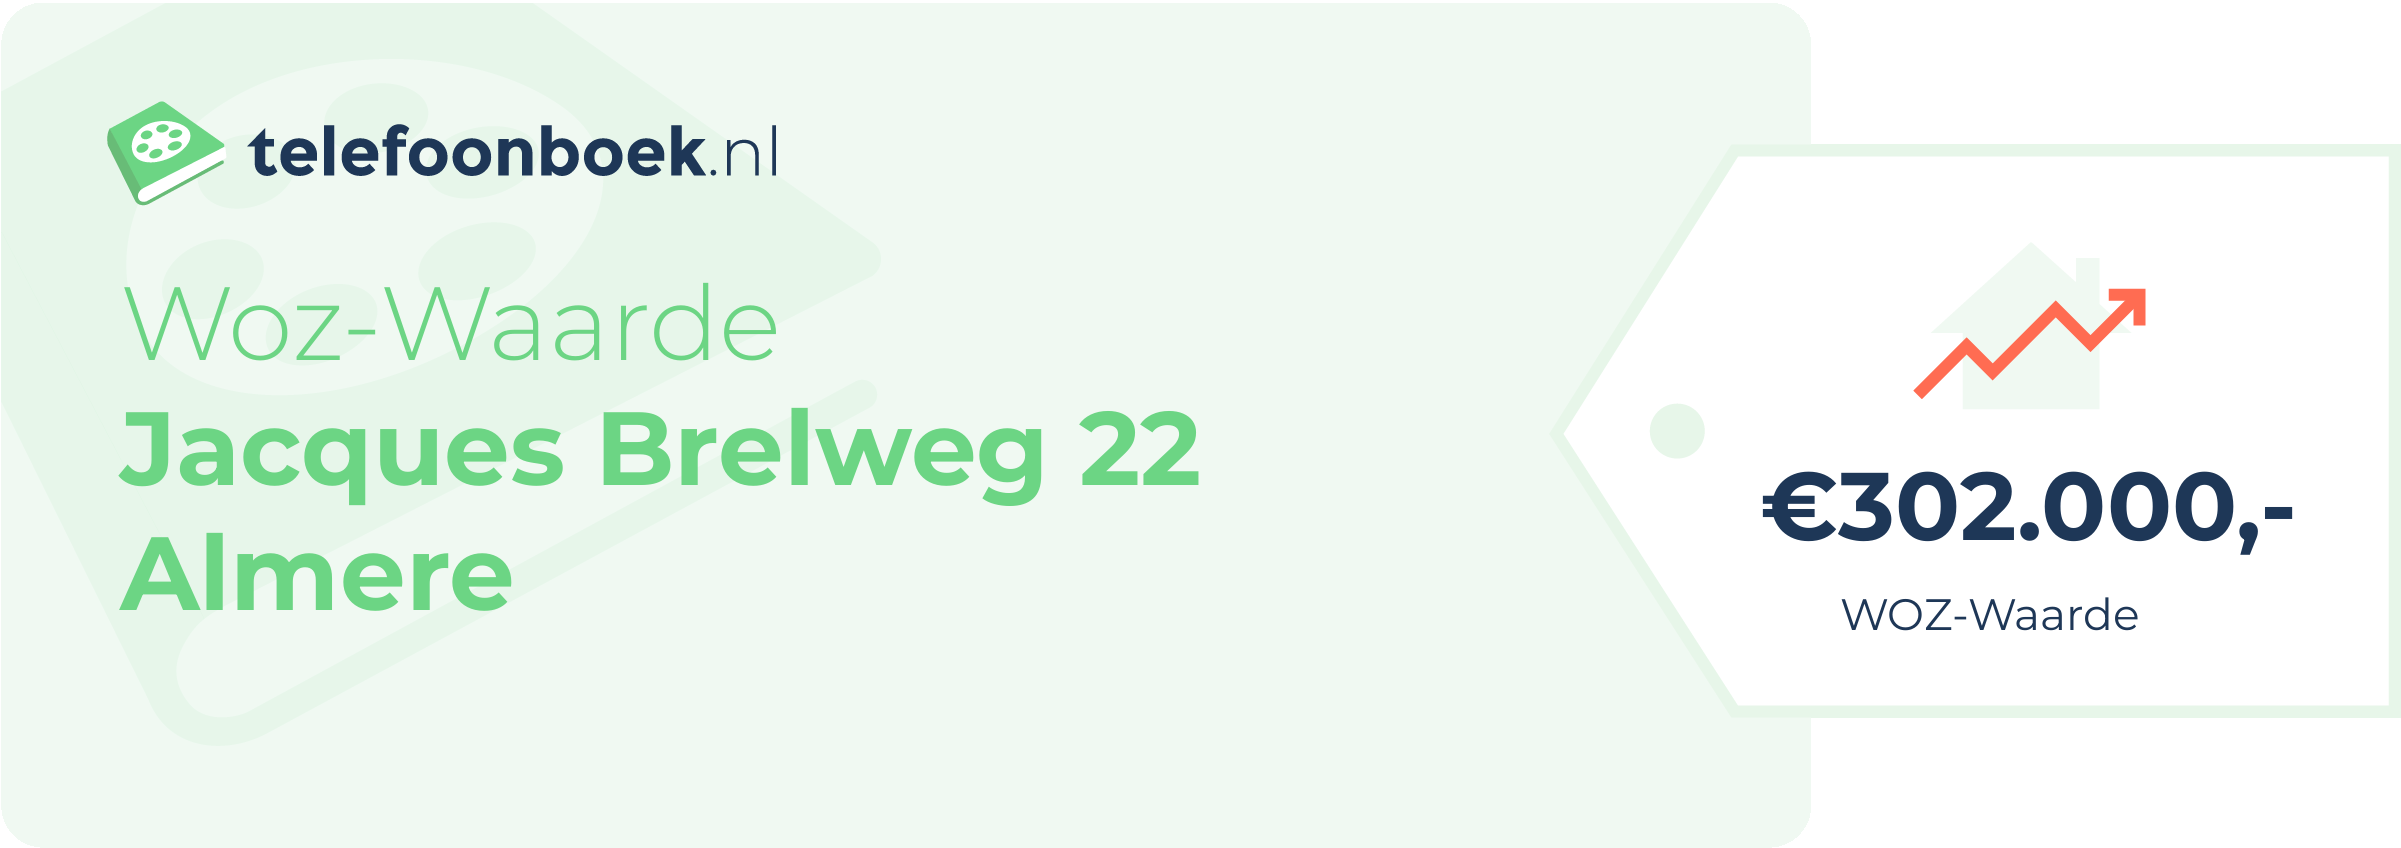 WOZ-waarde Jacques Brelweg 22 Almere